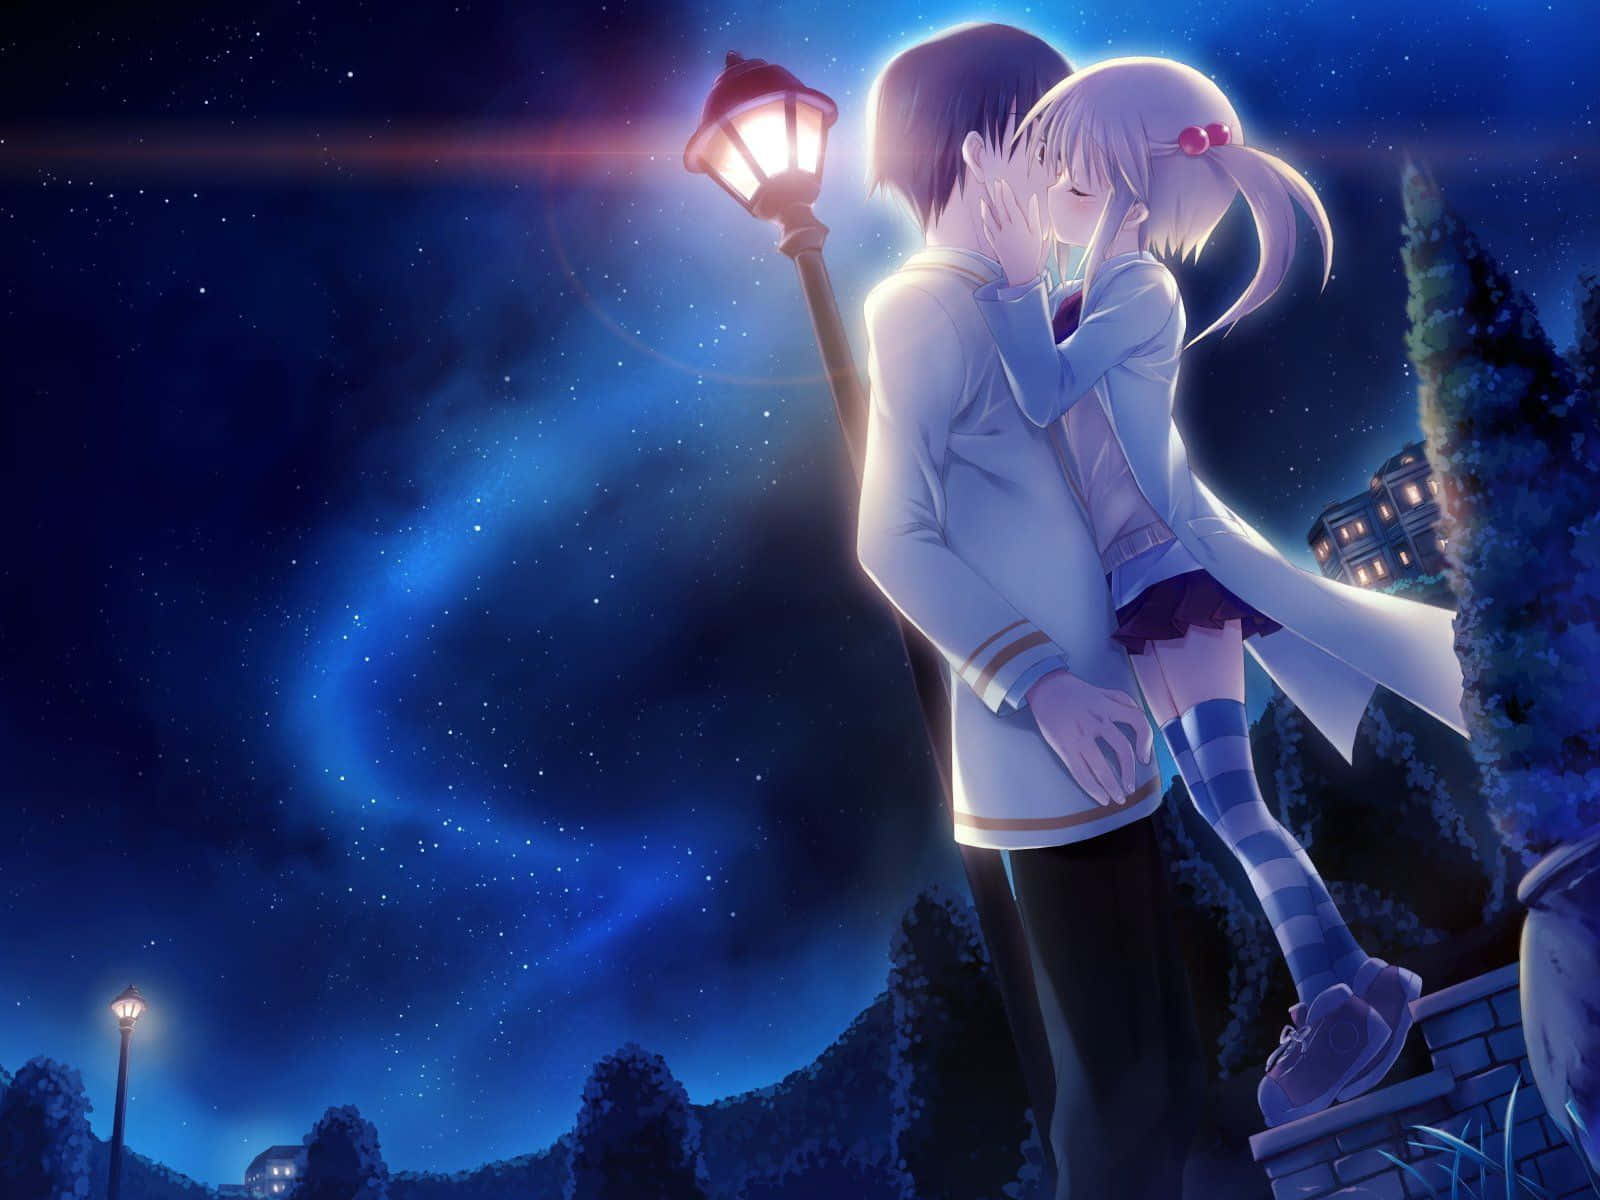 Parejade Anime Relajándose En Un Abrazo Romántico.